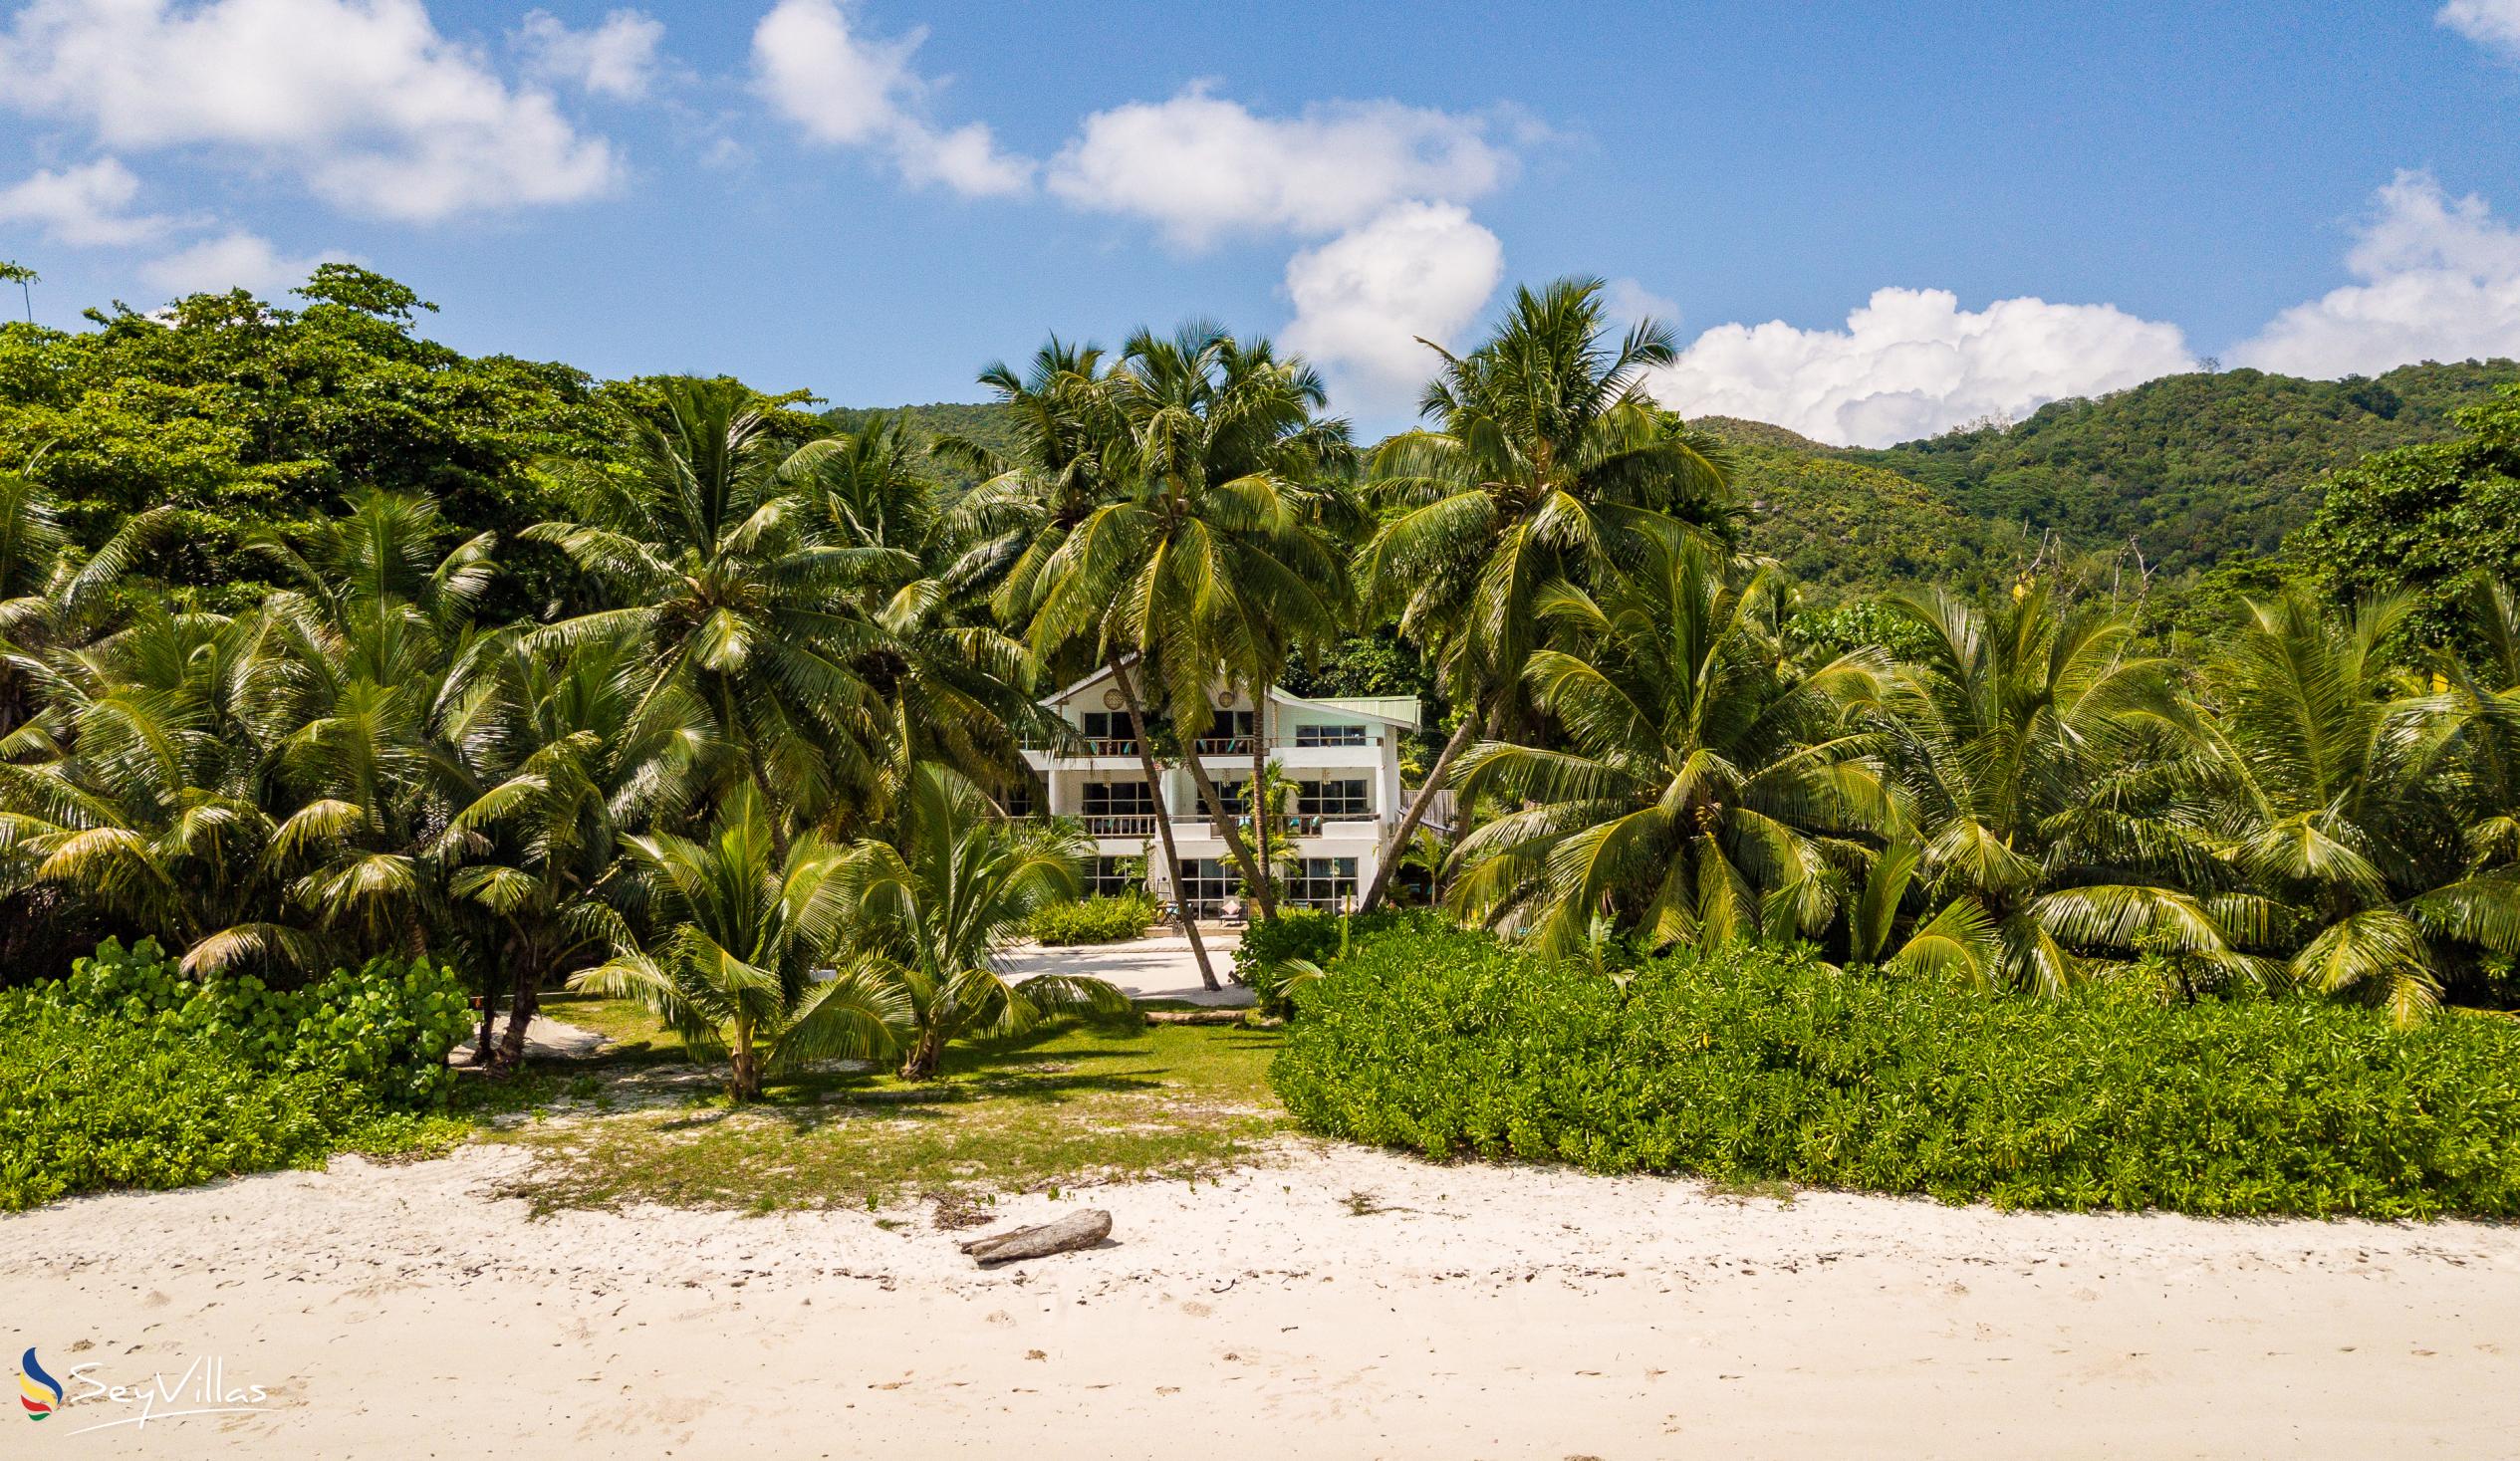 Foto 40: Bliss Hotel Praslin - Aussenbereich - Praslin (Seychellen)